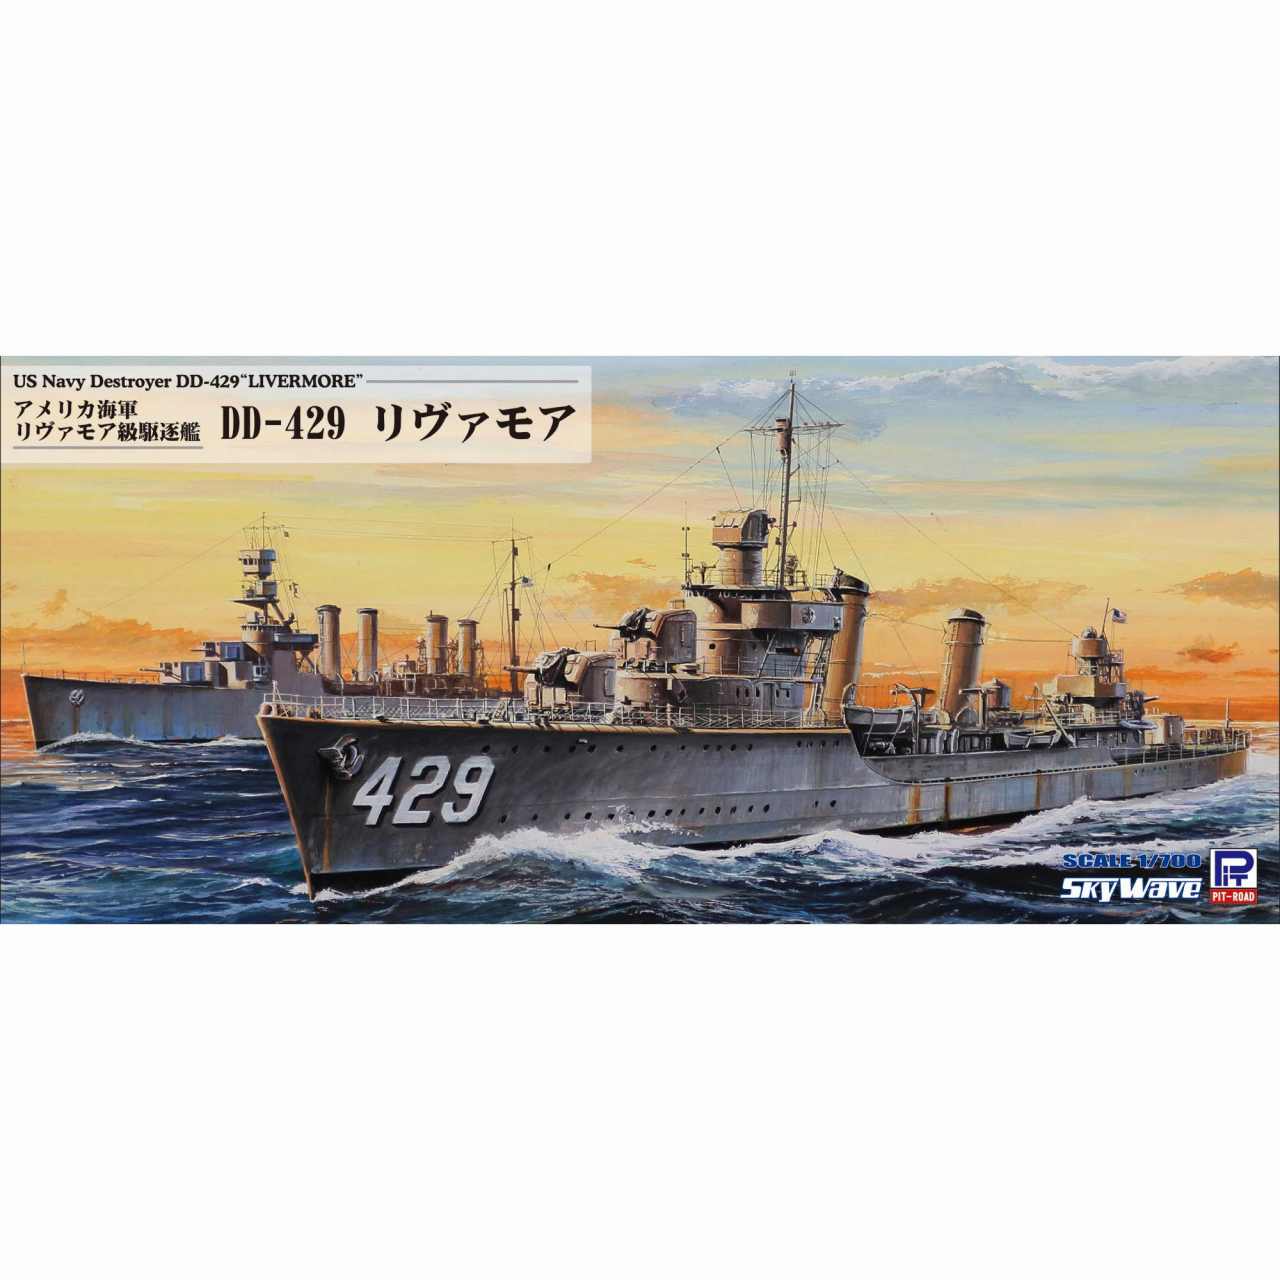 【再入荷】W211 アメリカ海軍 リヴァモア級駆逐艦 DD-429 リヴァモア